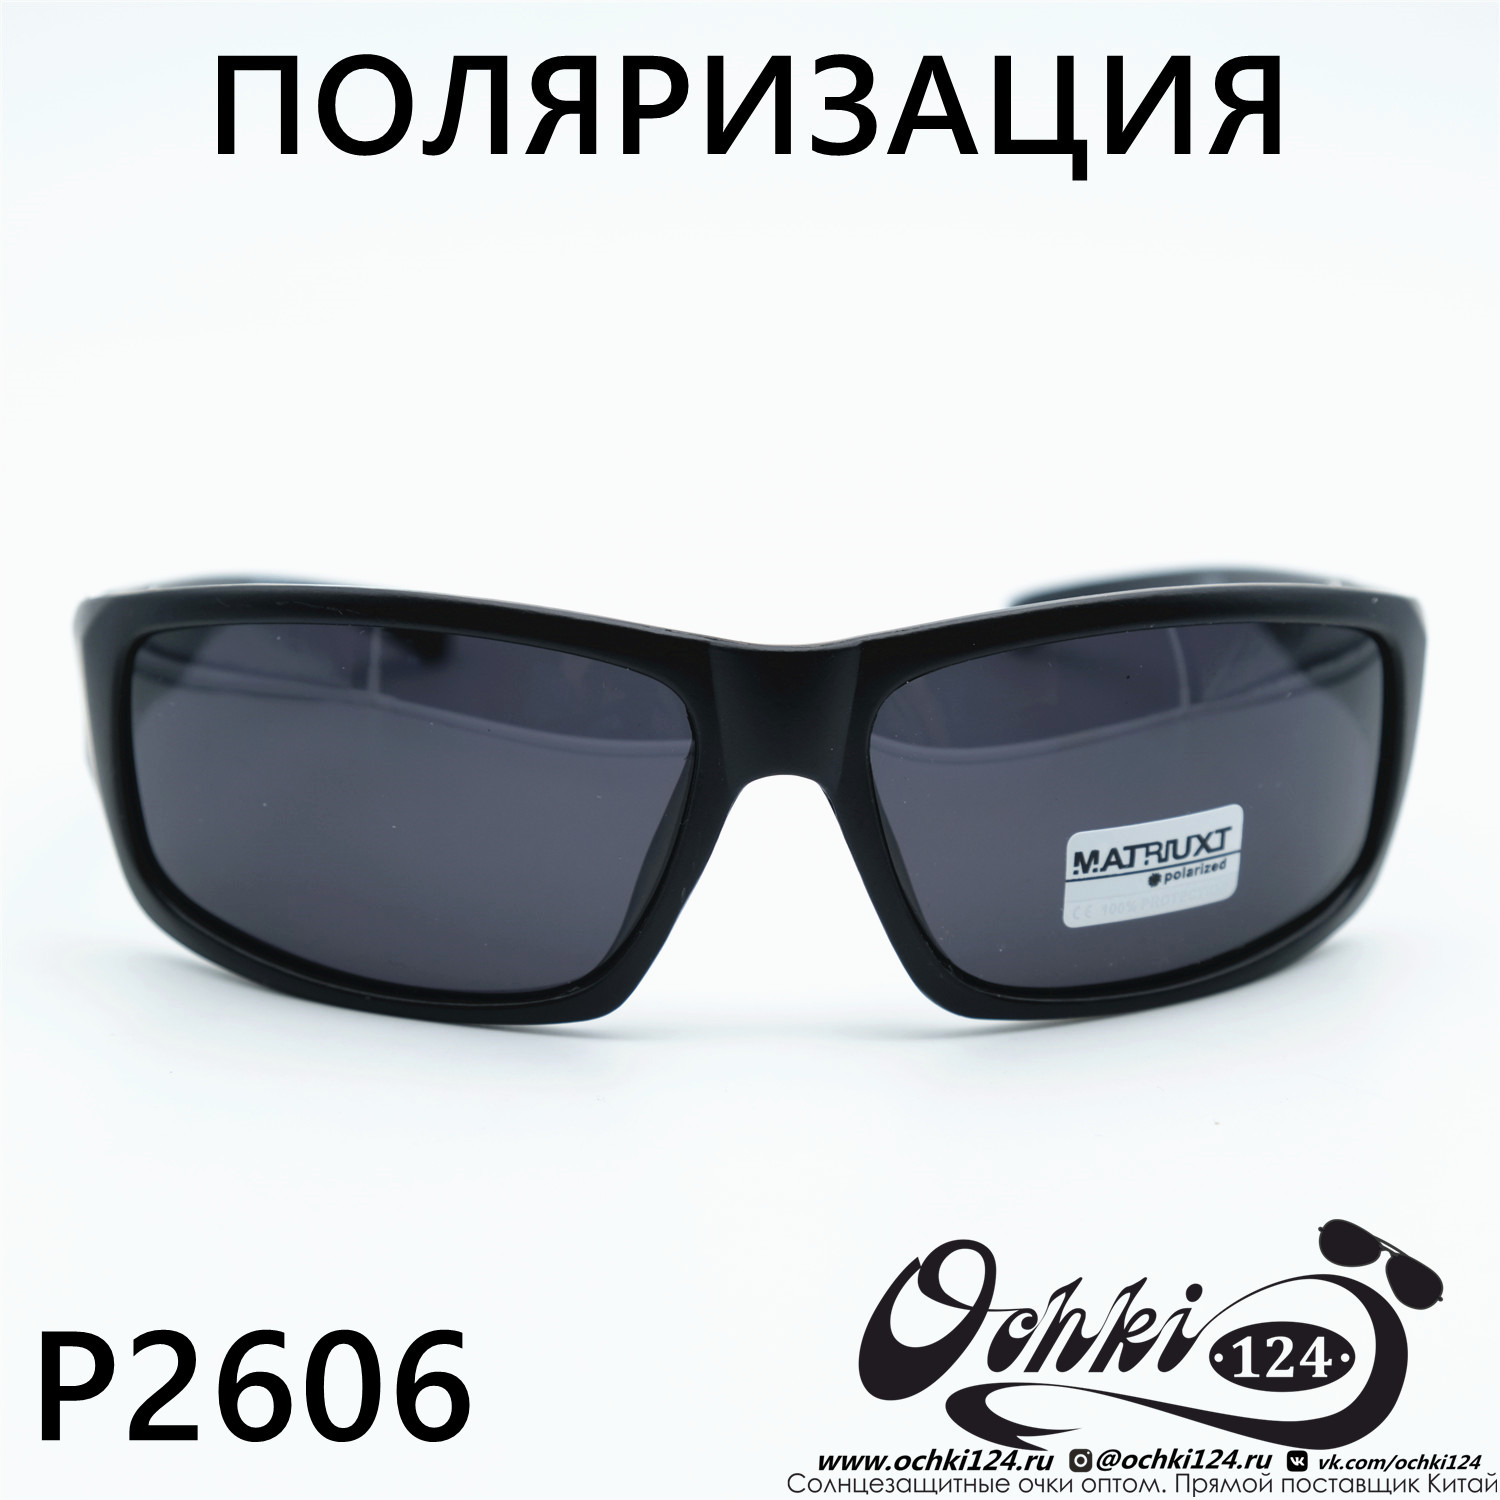  Солнцезащитные очки картинка Мужские MATRIUXT  Прямоугольные P2606-C2 